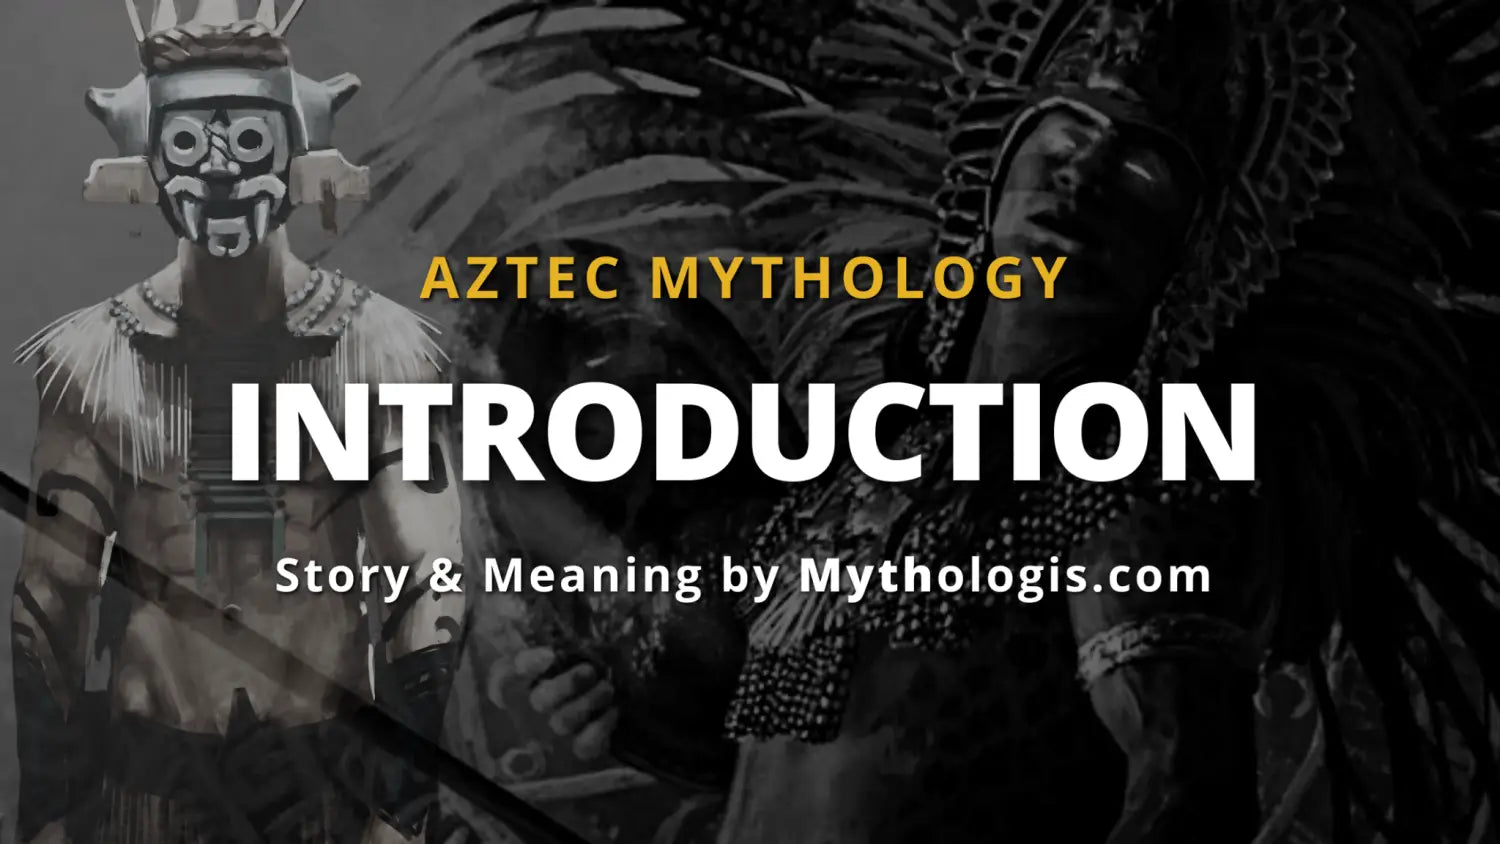 Aztec Mythology introduction: Myths & Legends